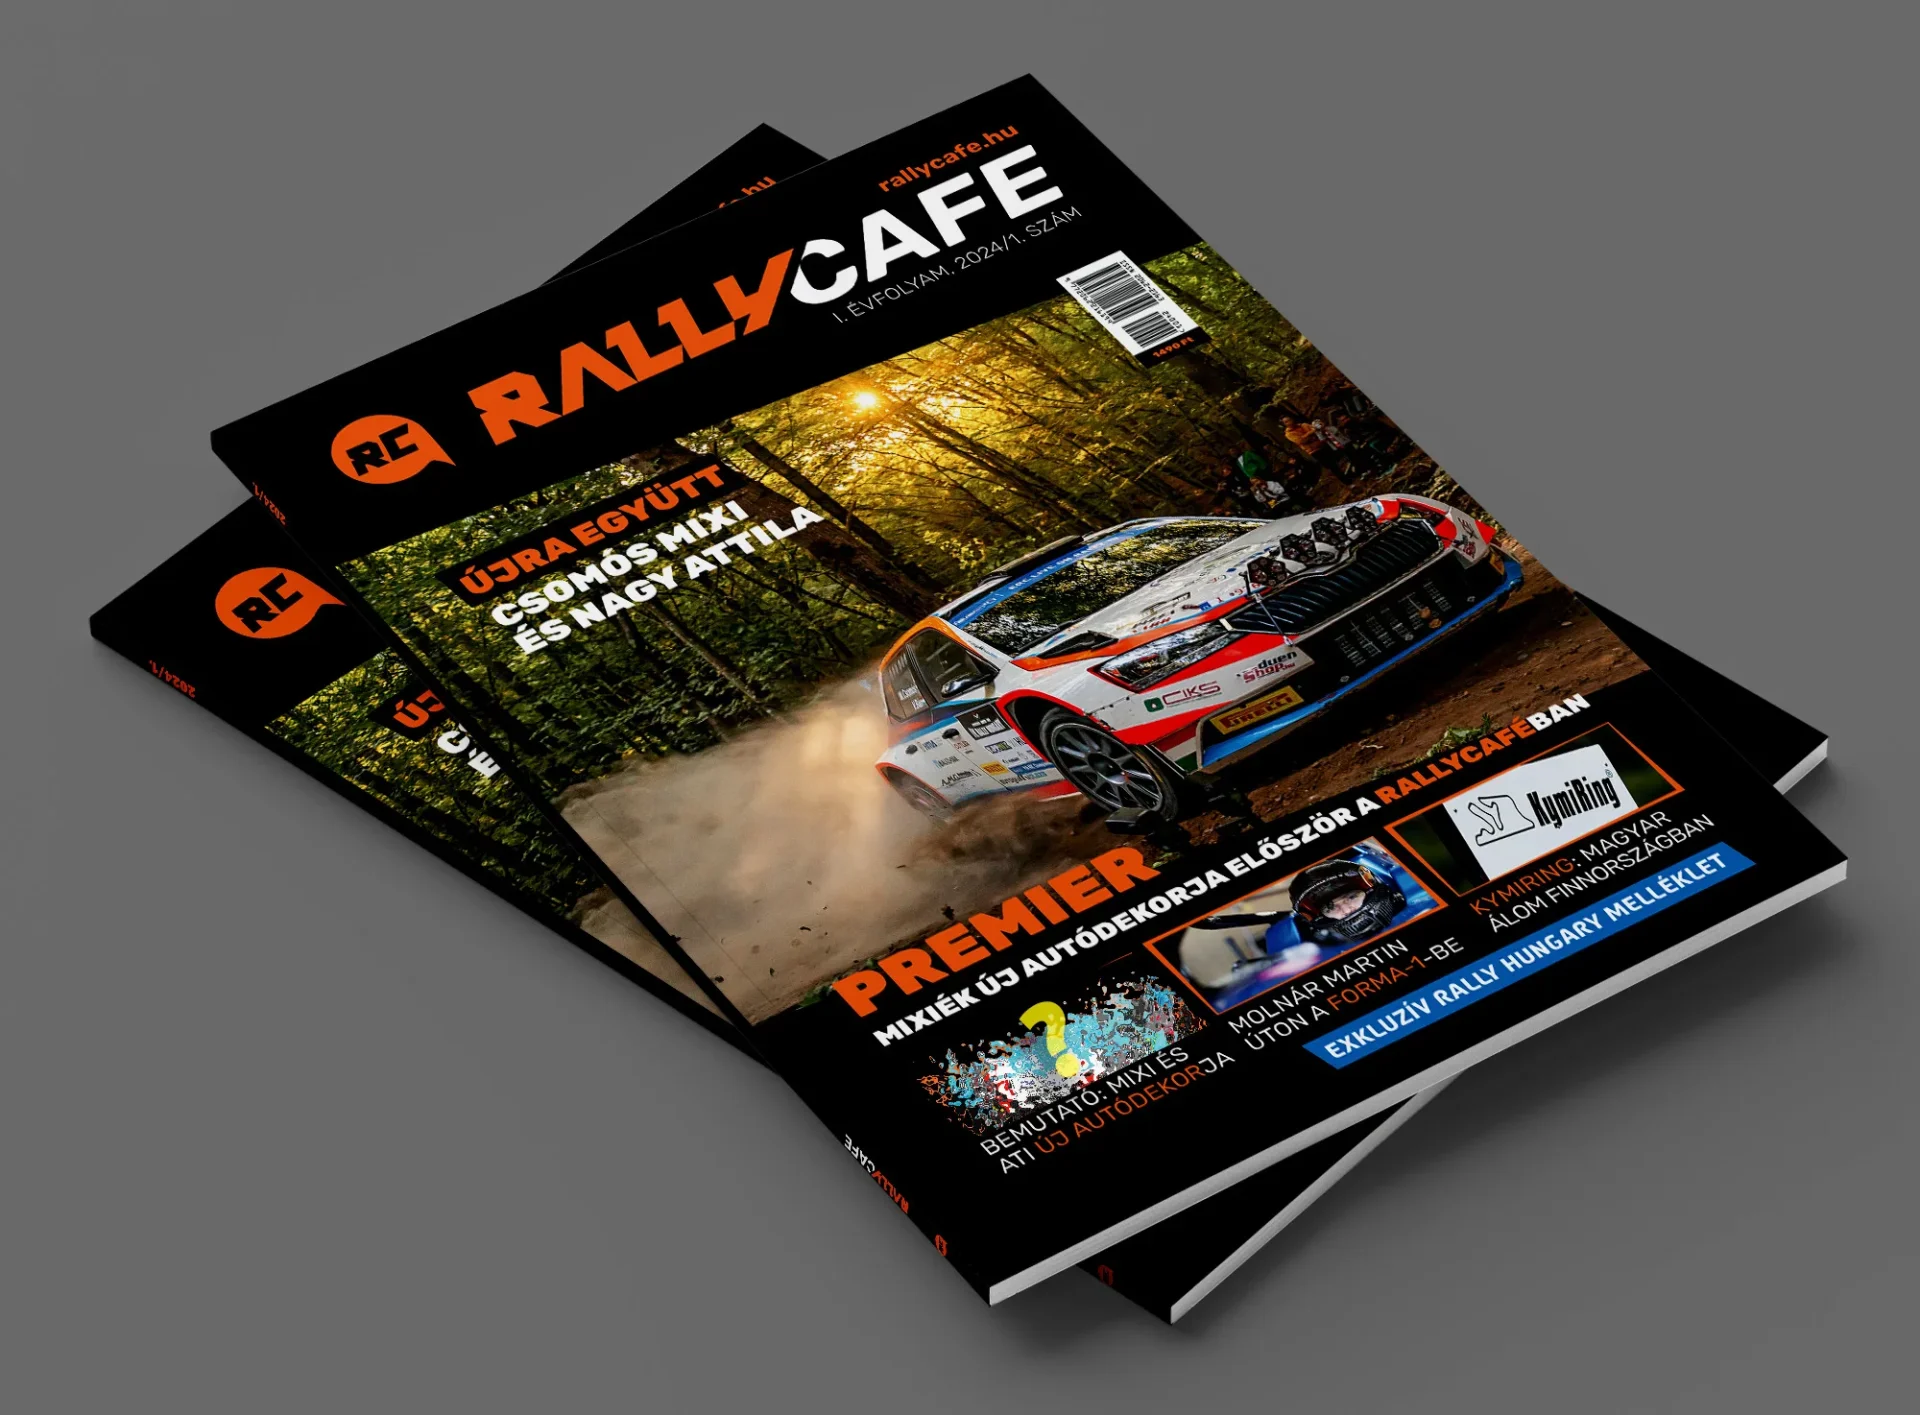 Visszatér a Rallycafe magazin: országszerte újra kapható a hétvégétől!